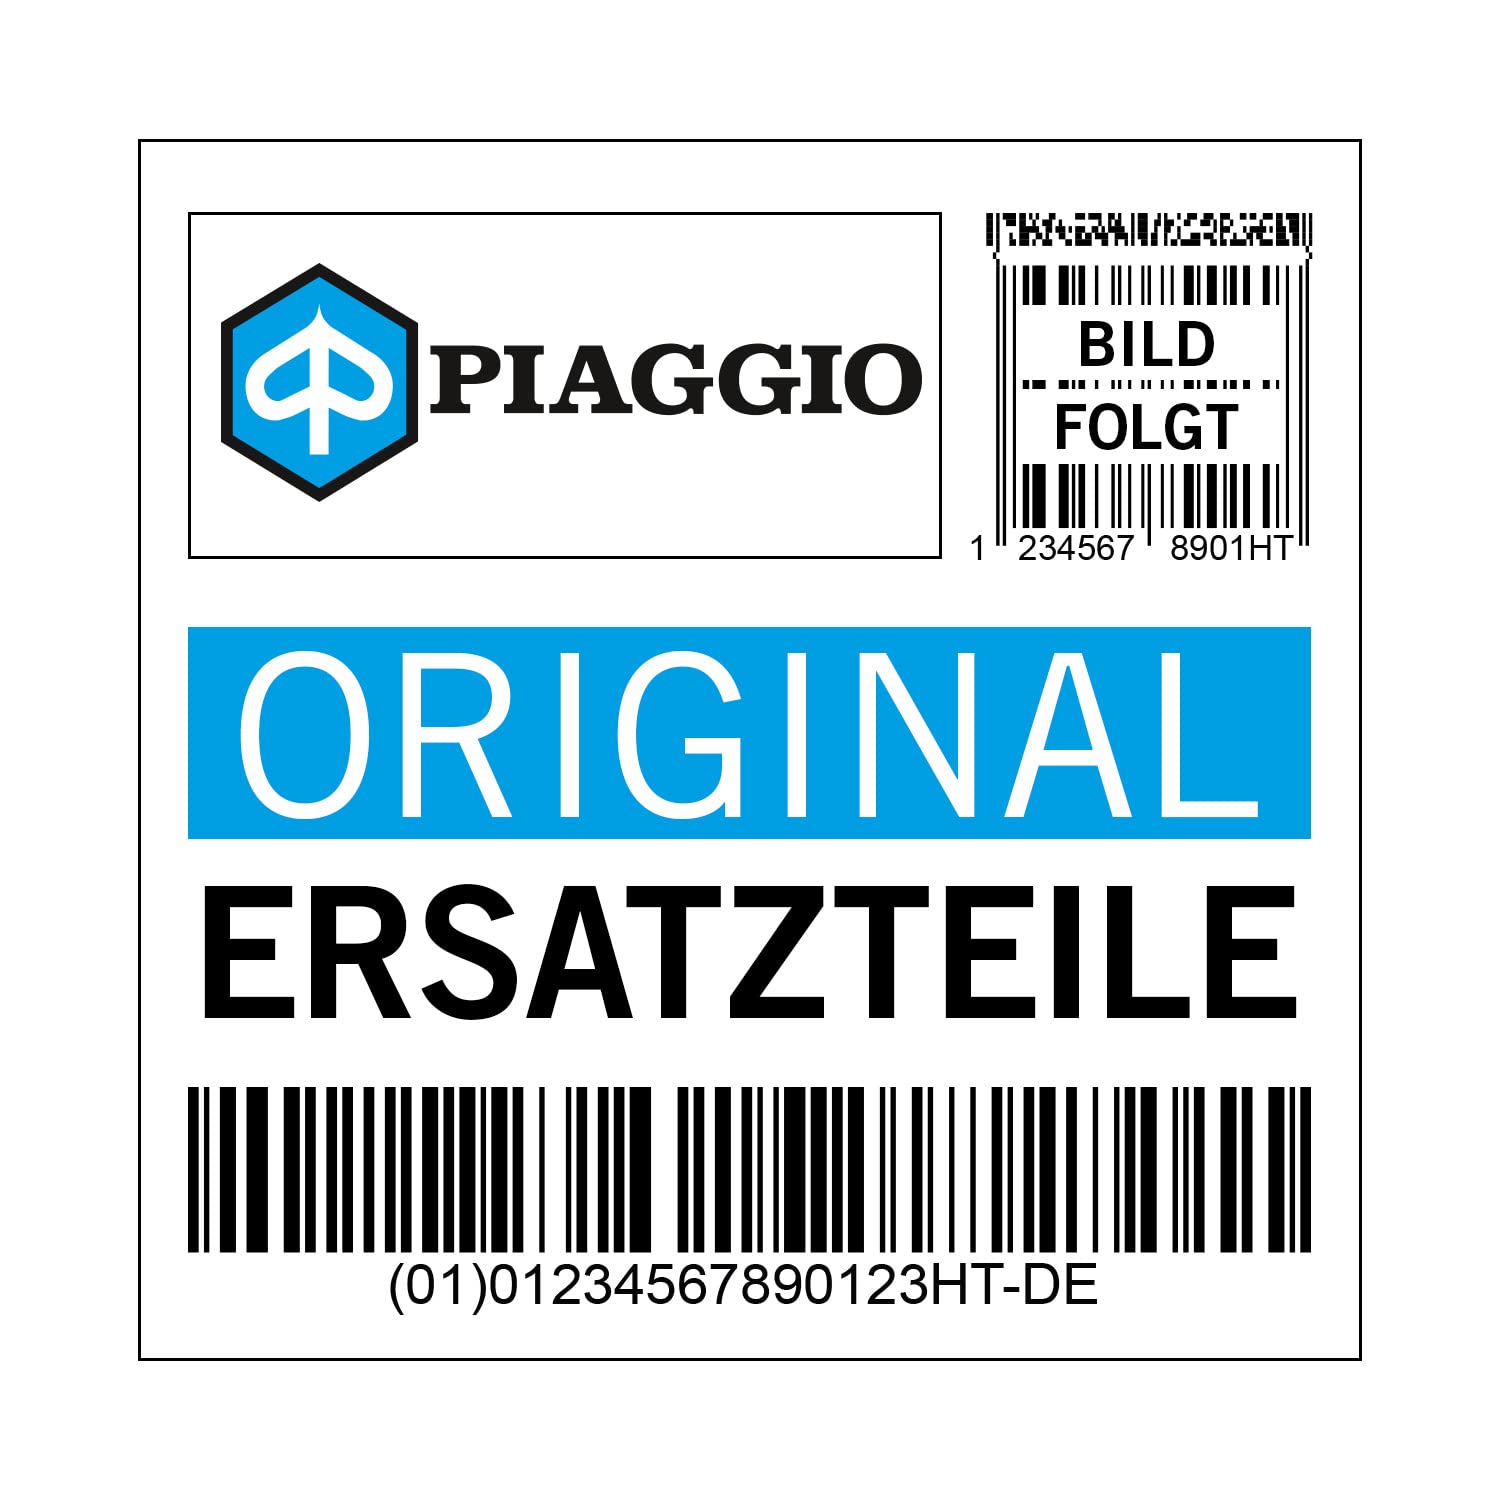 Dichtung Piaggio Ölpumpe für 500 ccm, 847962 von Maxtuned